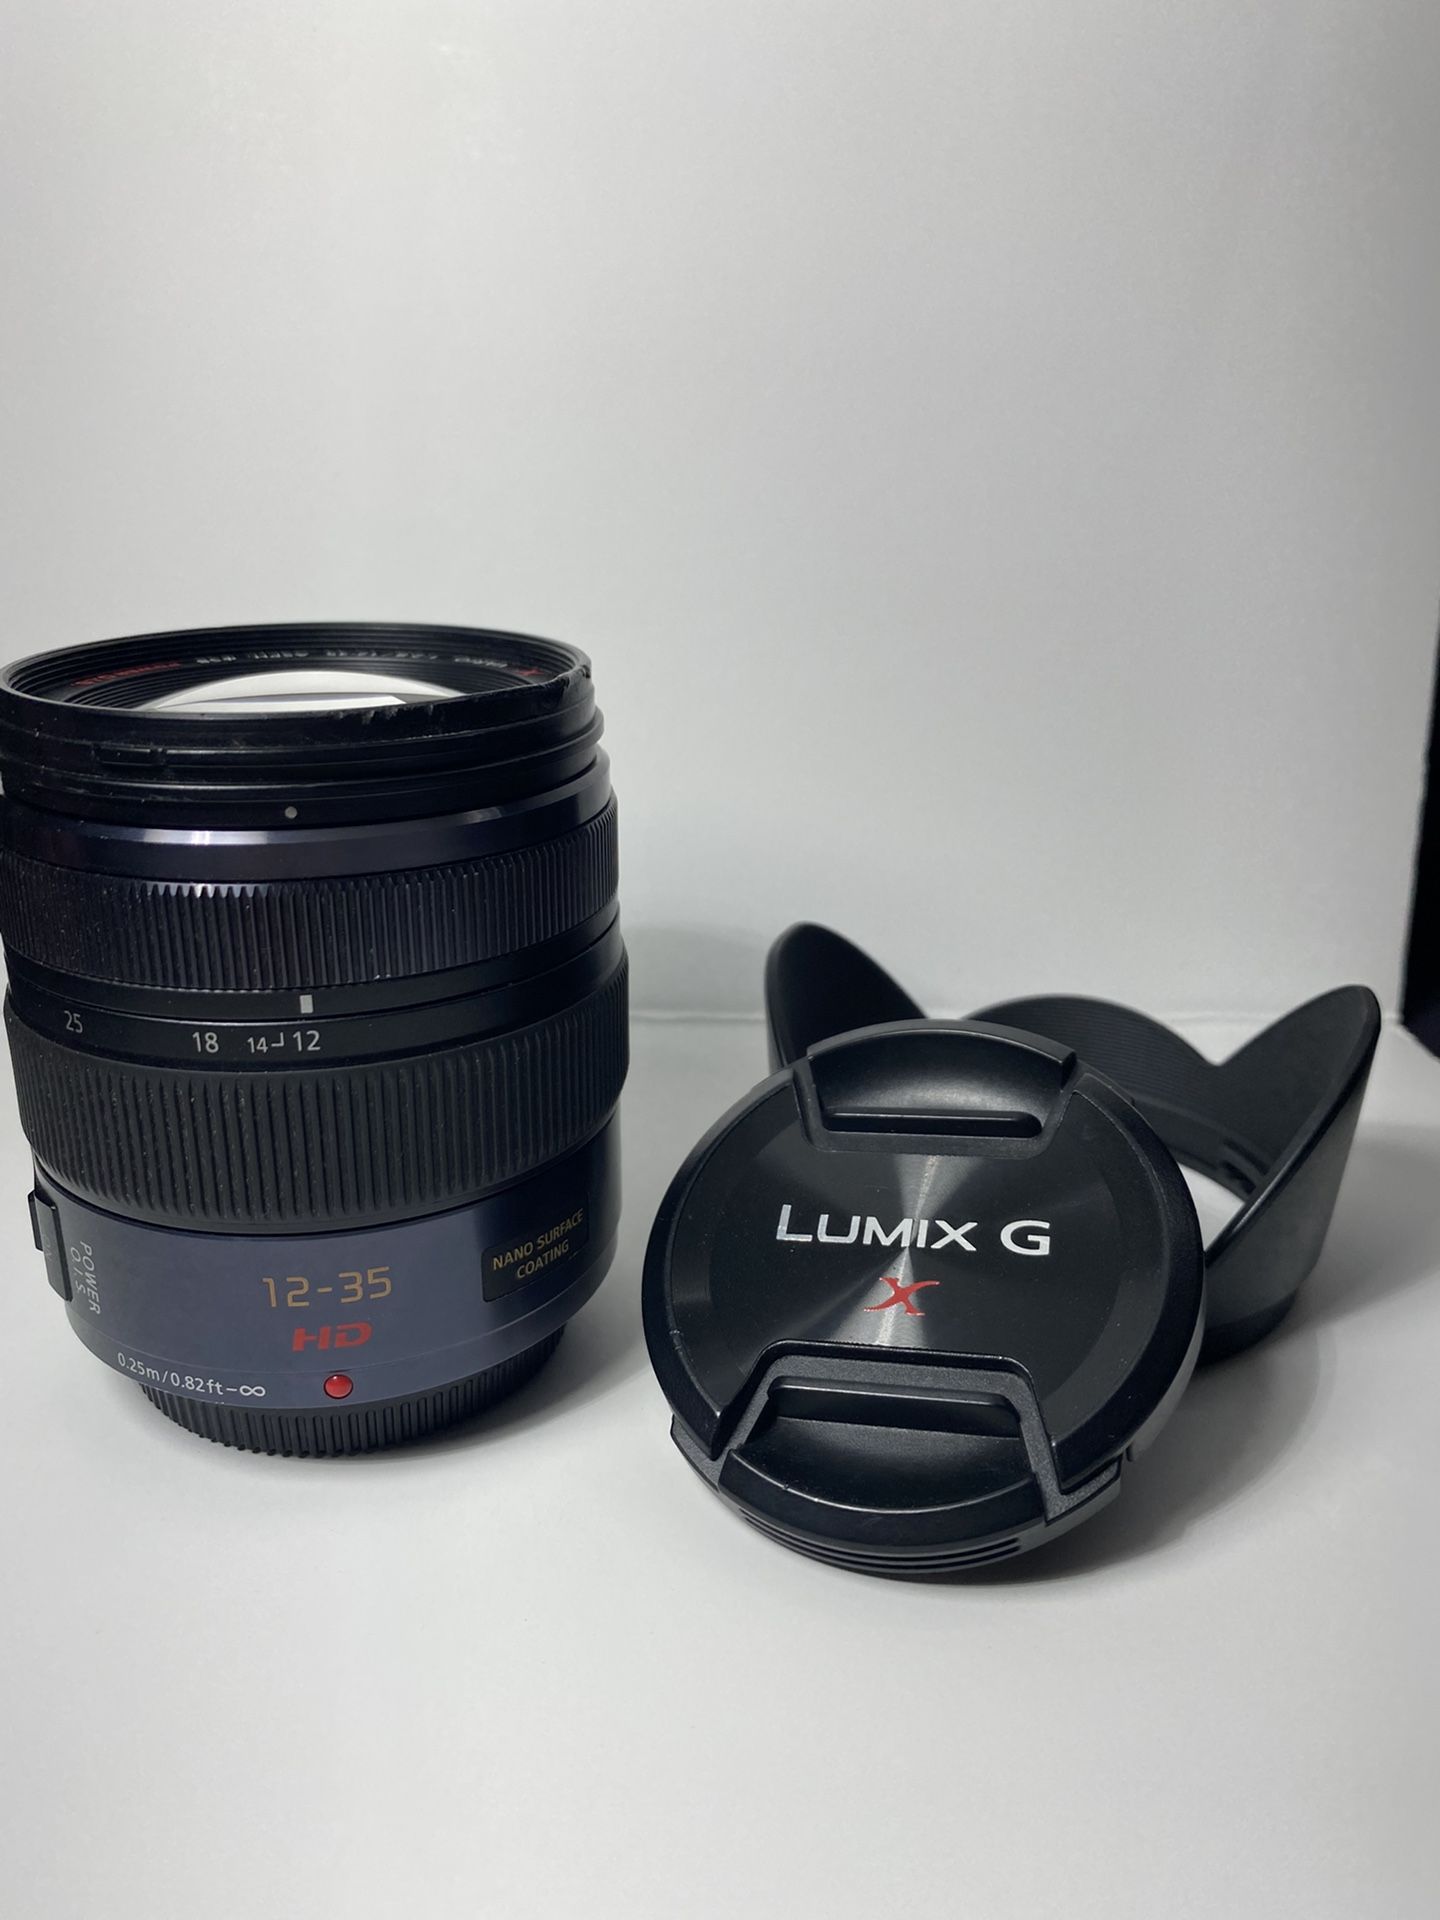 Lumix GX 12-35mm F2.8